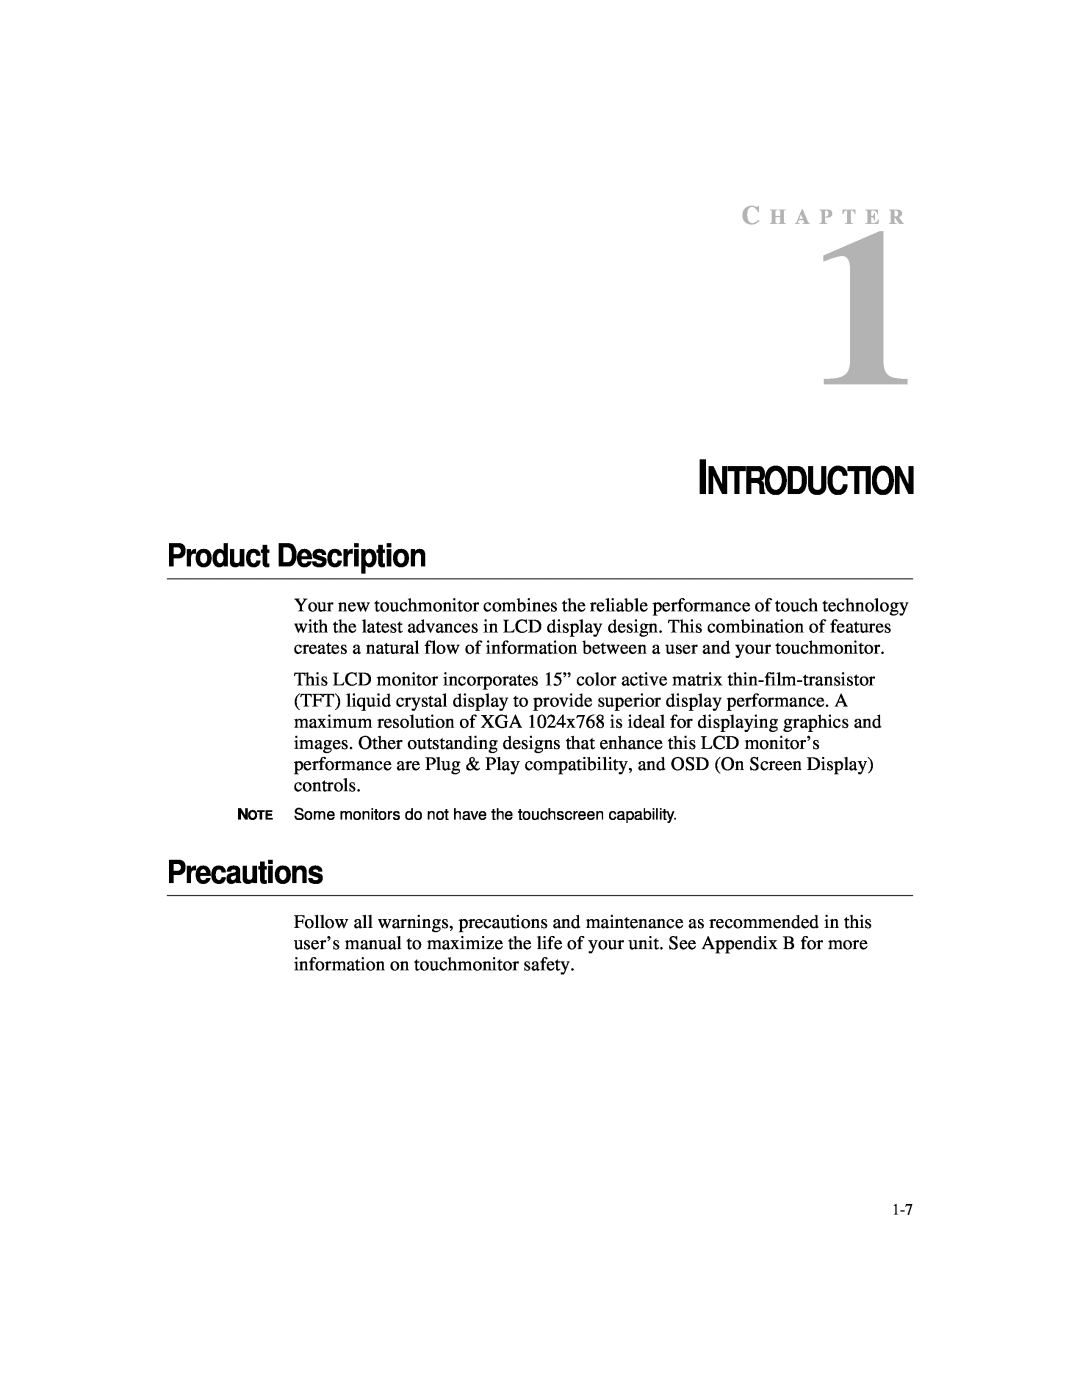 Elo TouchSystems 1524L manual Product Description, Precautions, C H A P T E R, Introduction 